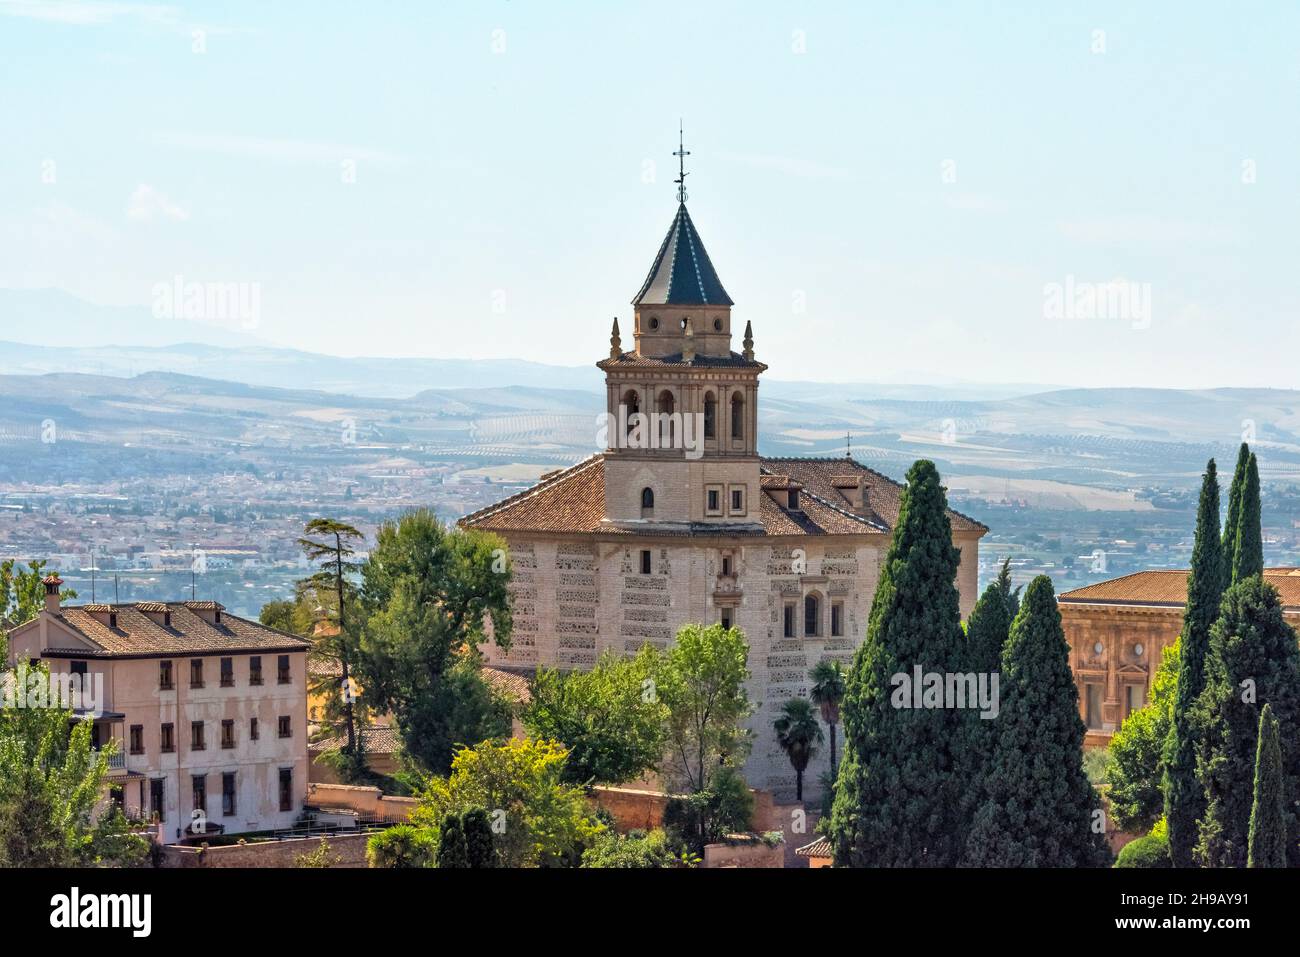 Santa Maria de la Alhambra, Granada, Granada Province, Andalusia Autonomous Community, Spain Stock Photo